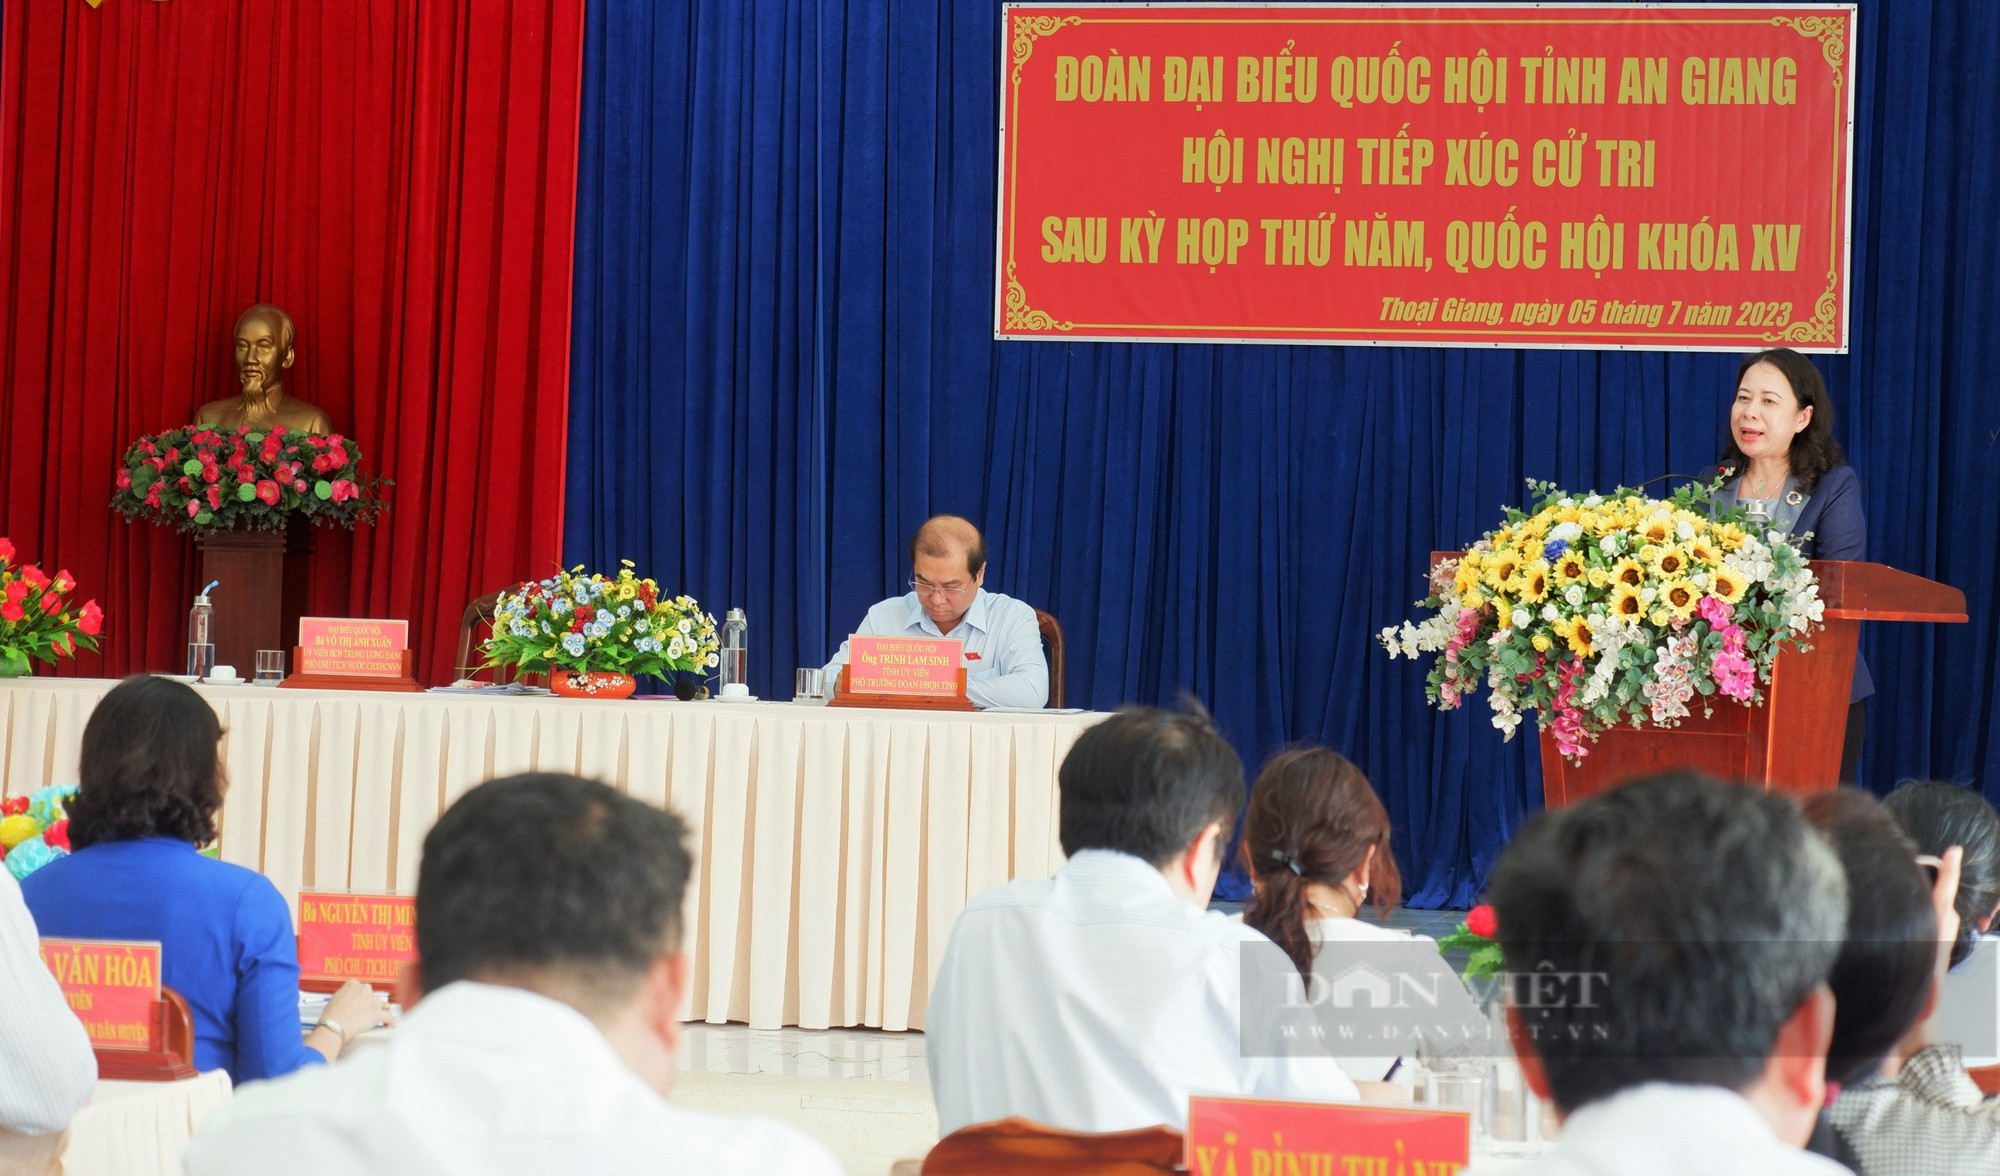 Phó Chủ tịch nước Võ Thị Ánh Xuân và đoàn ĐBQH tỉnh An Giang tiếp xúc cử tri tại An Giang - Ảnh 1.